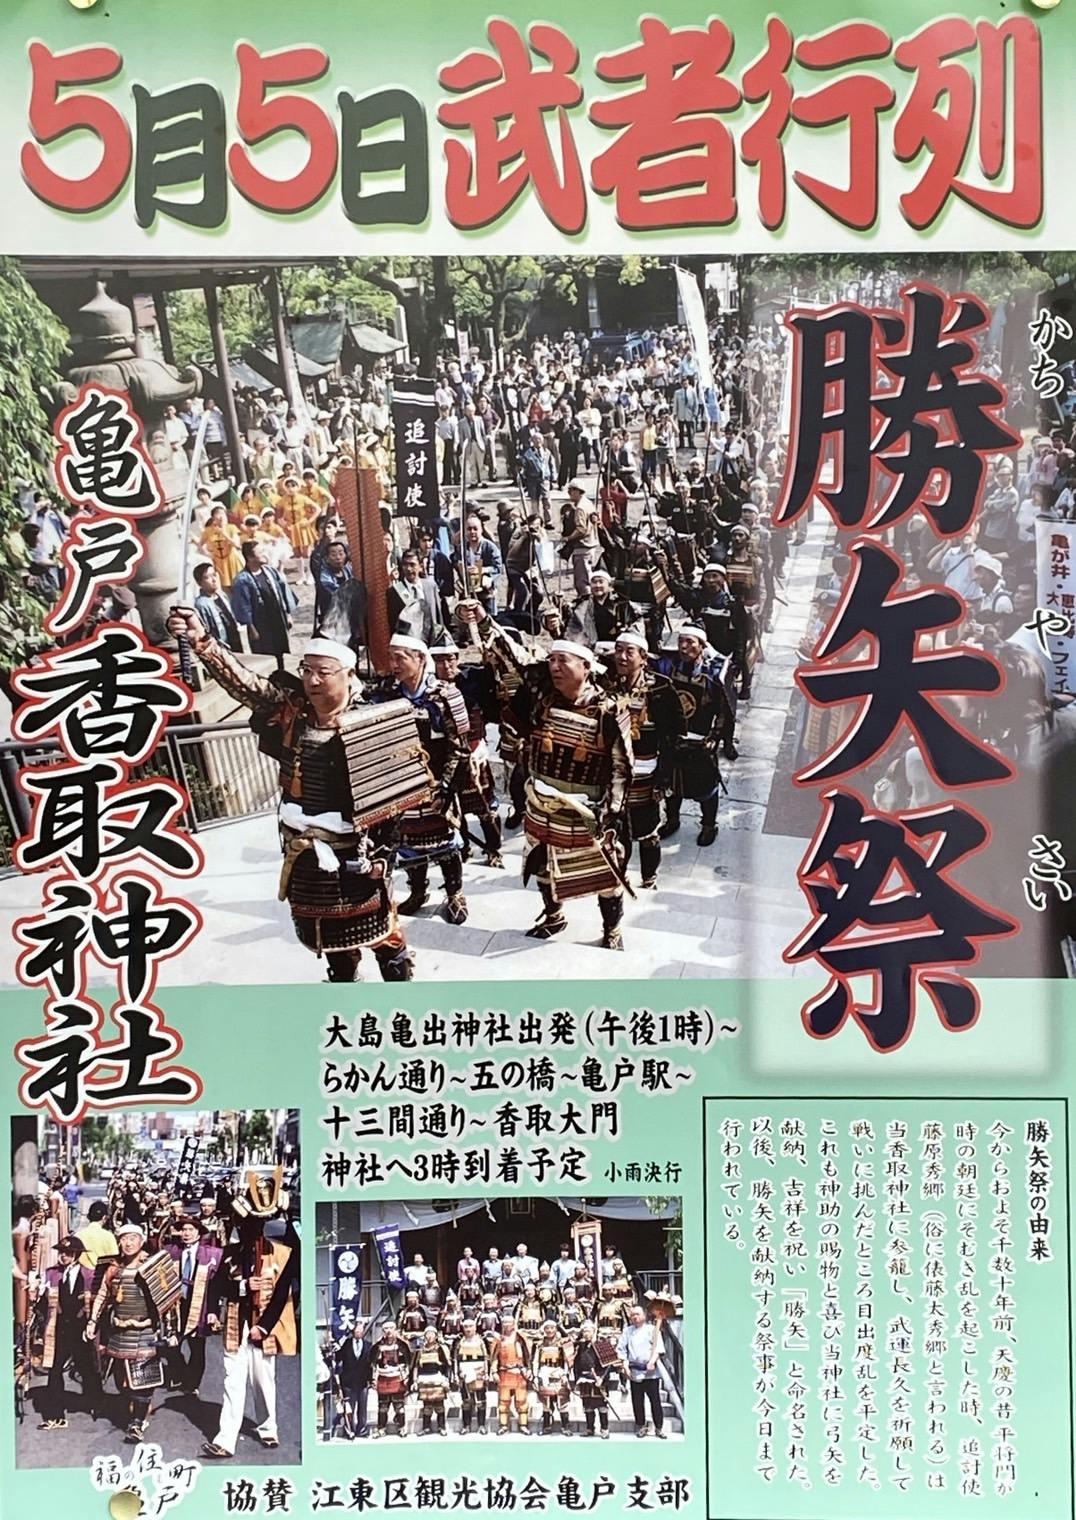 4年振り開催の亀戸香取神社「勝矢祭」を応援してまいります。